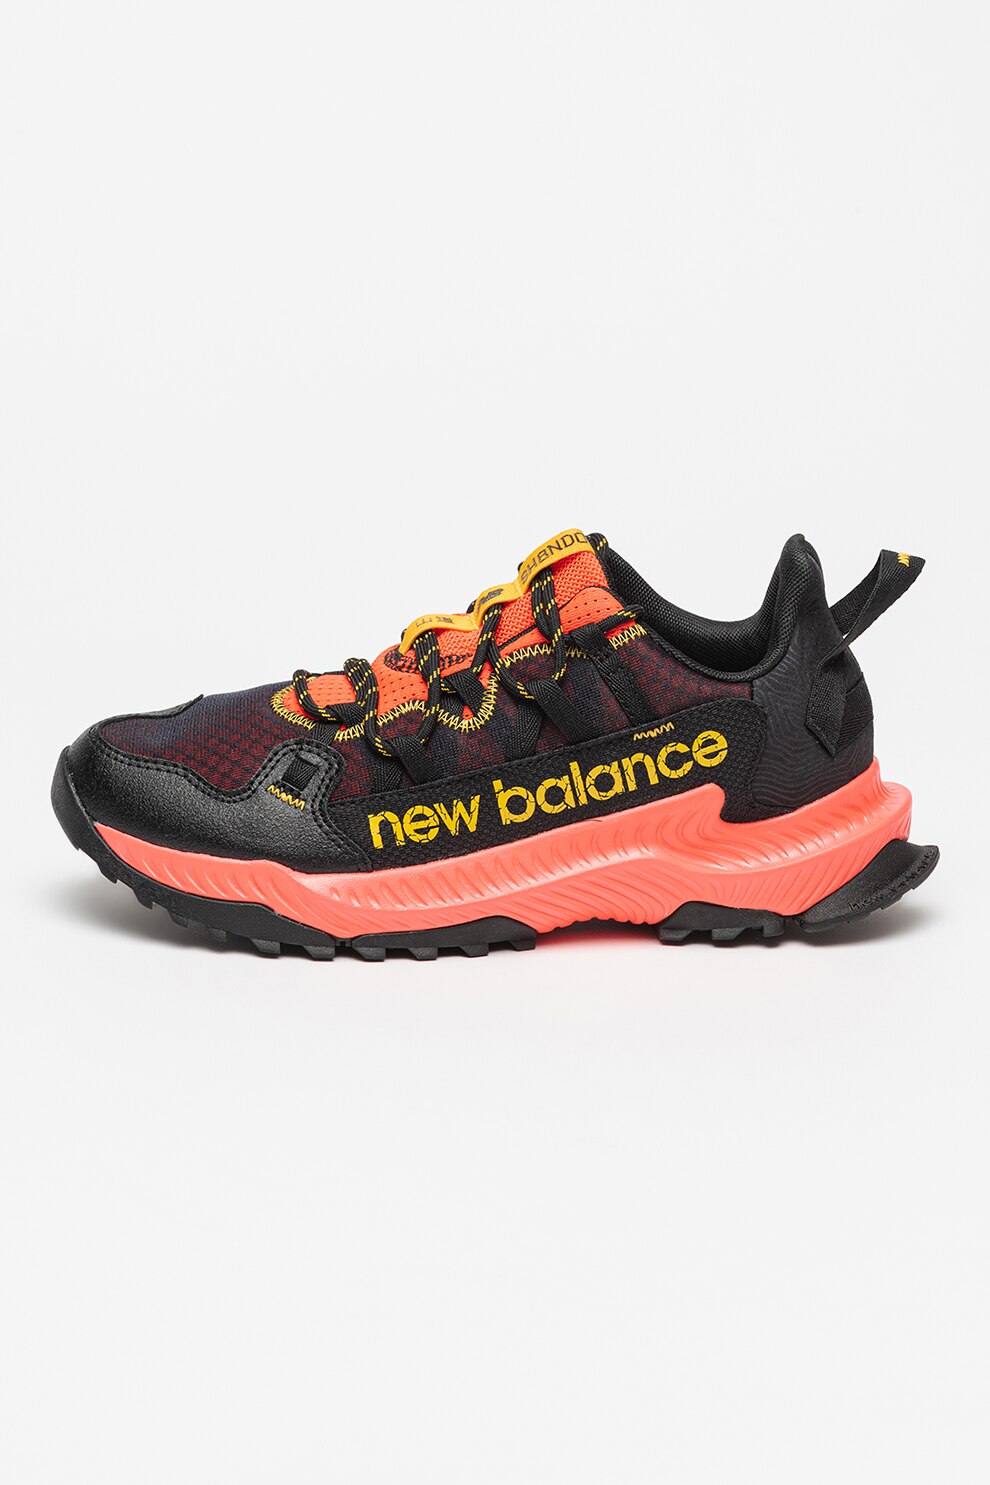 Optimism slogan Publicity New Balance, Pantofi de plasa cu aspect contrastant pentru alergare Shando  - eMAG.ro